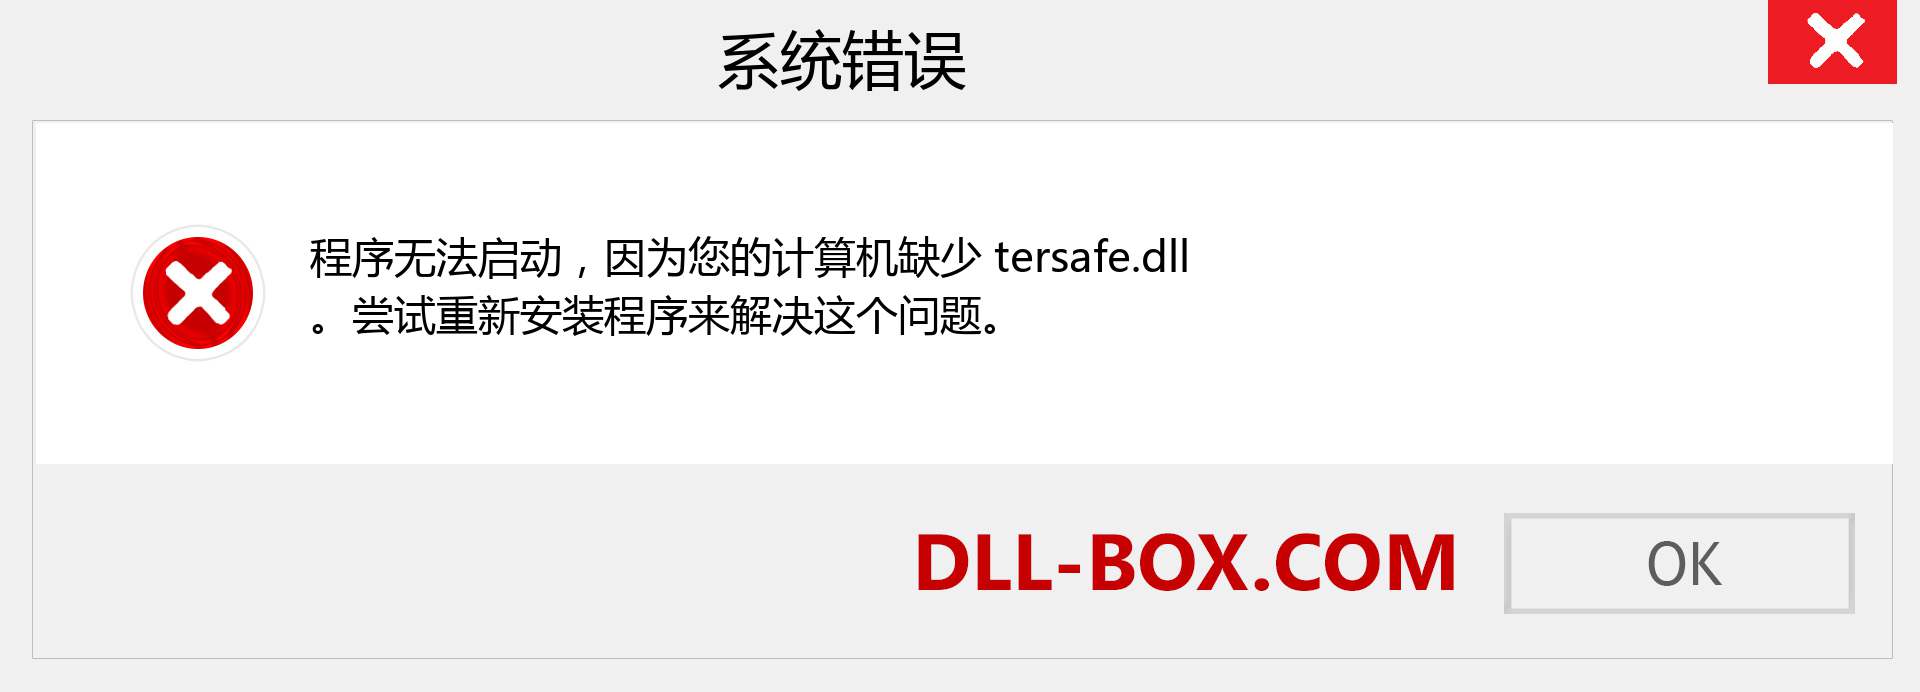 tersafe.dll 文件丢失？。 适用于 Windows 7、8、10 的下载 - 修复 Windows、照片、图像上的 tersafe dll 丢失错误